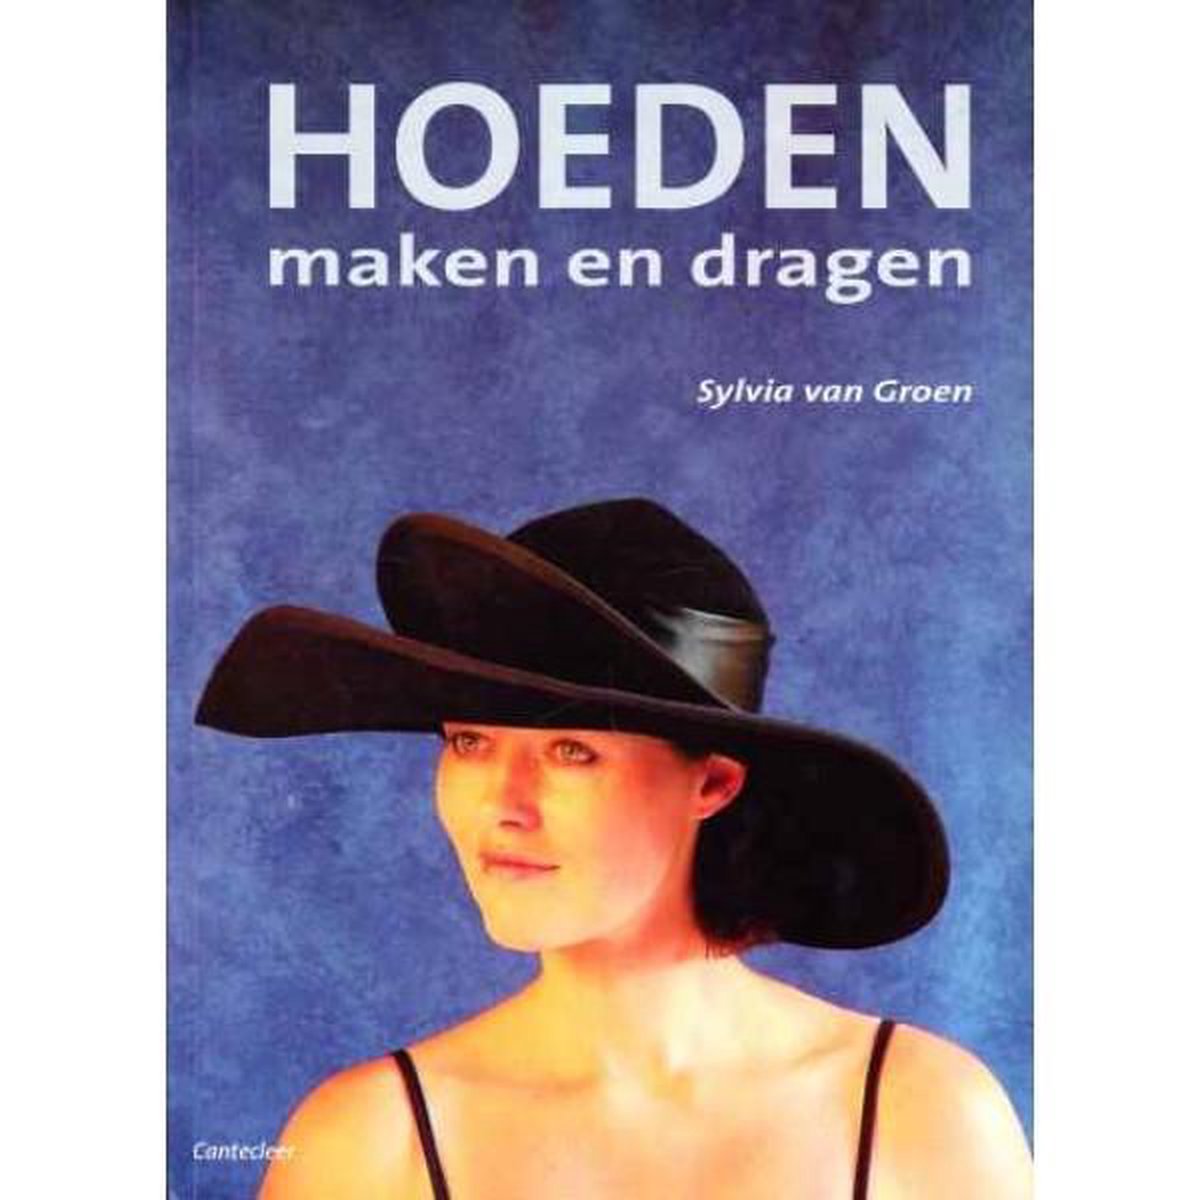 Postcode Het apparaat Zonder Hoeden maken en dragen, Sylvia van Groen | 9789021332611 | Boeken | bol.com